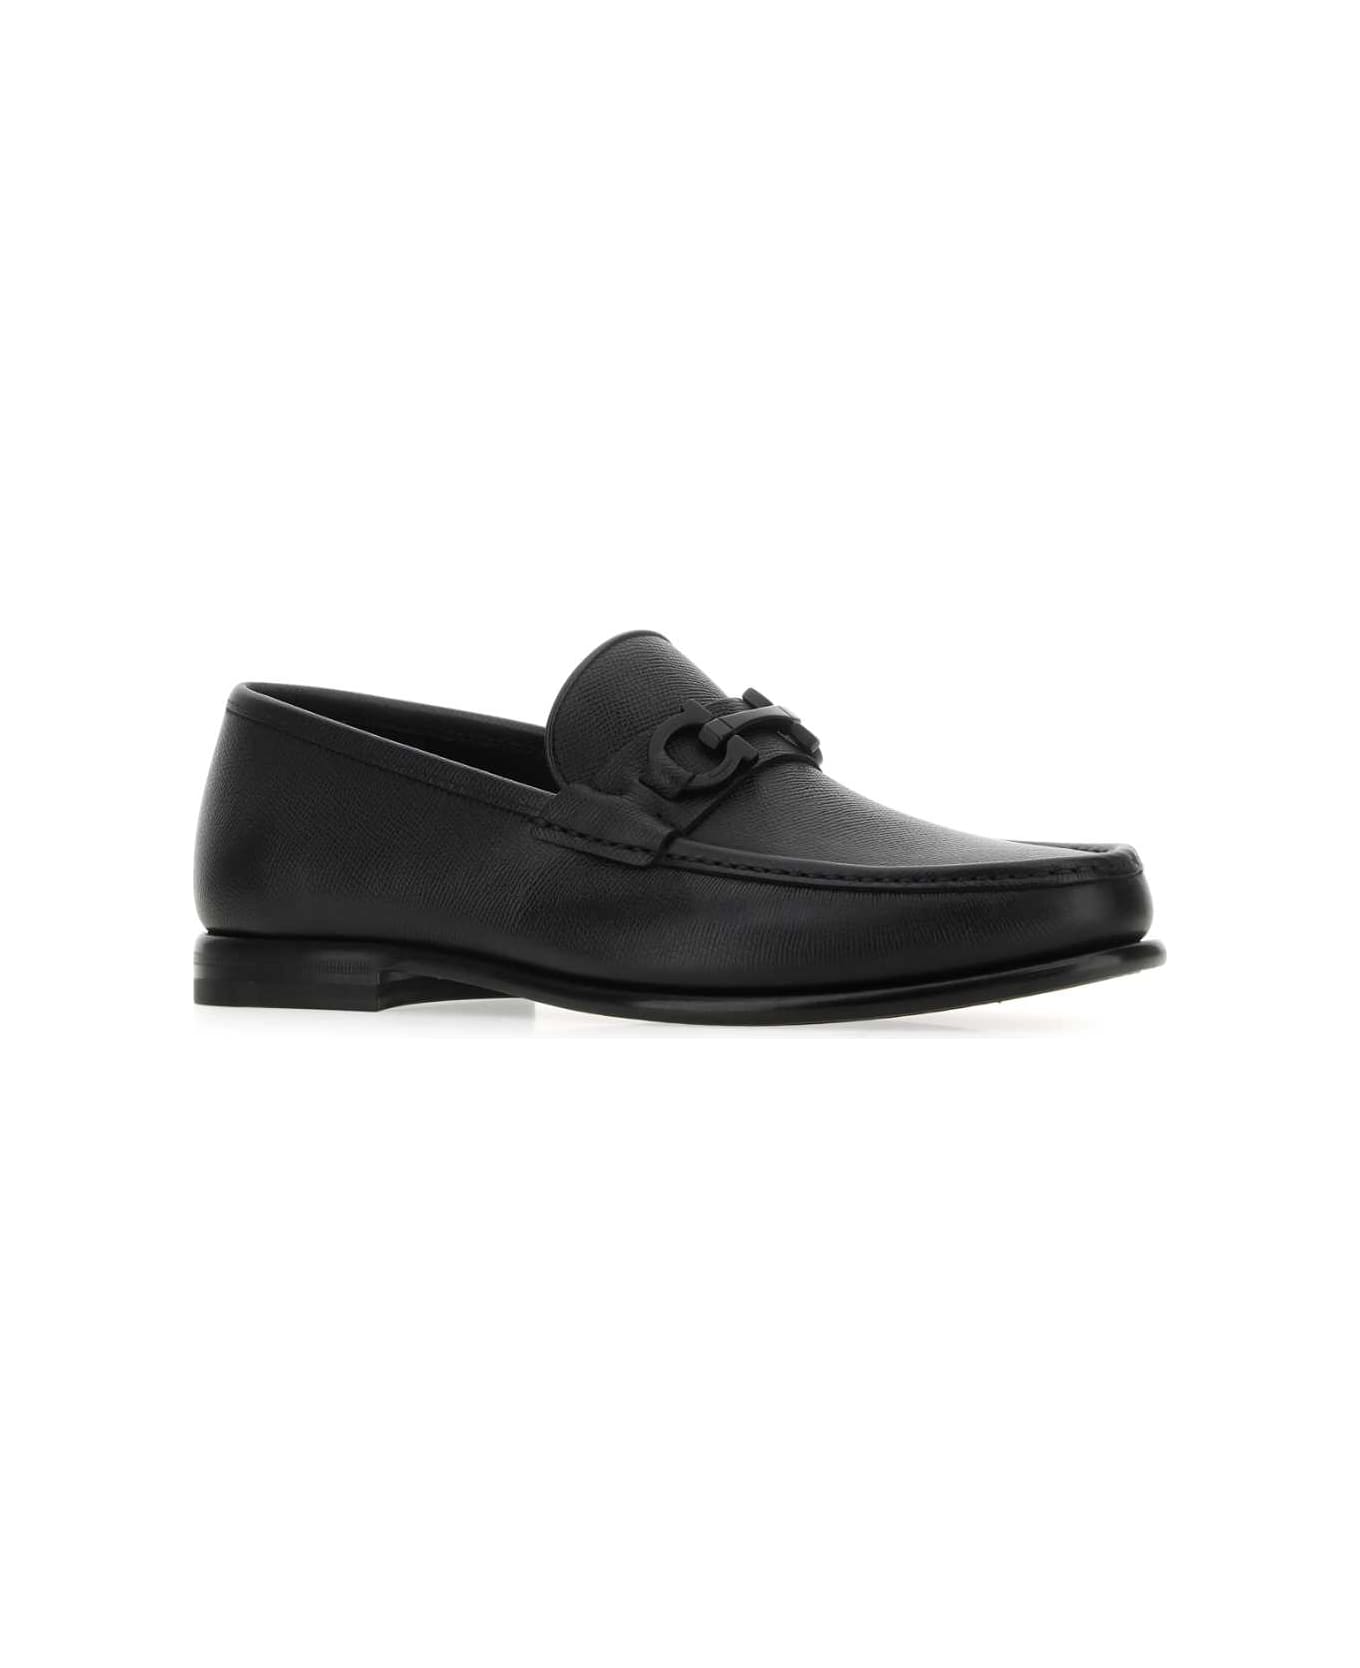 Ferragamo Black Leather Loafers - NERO